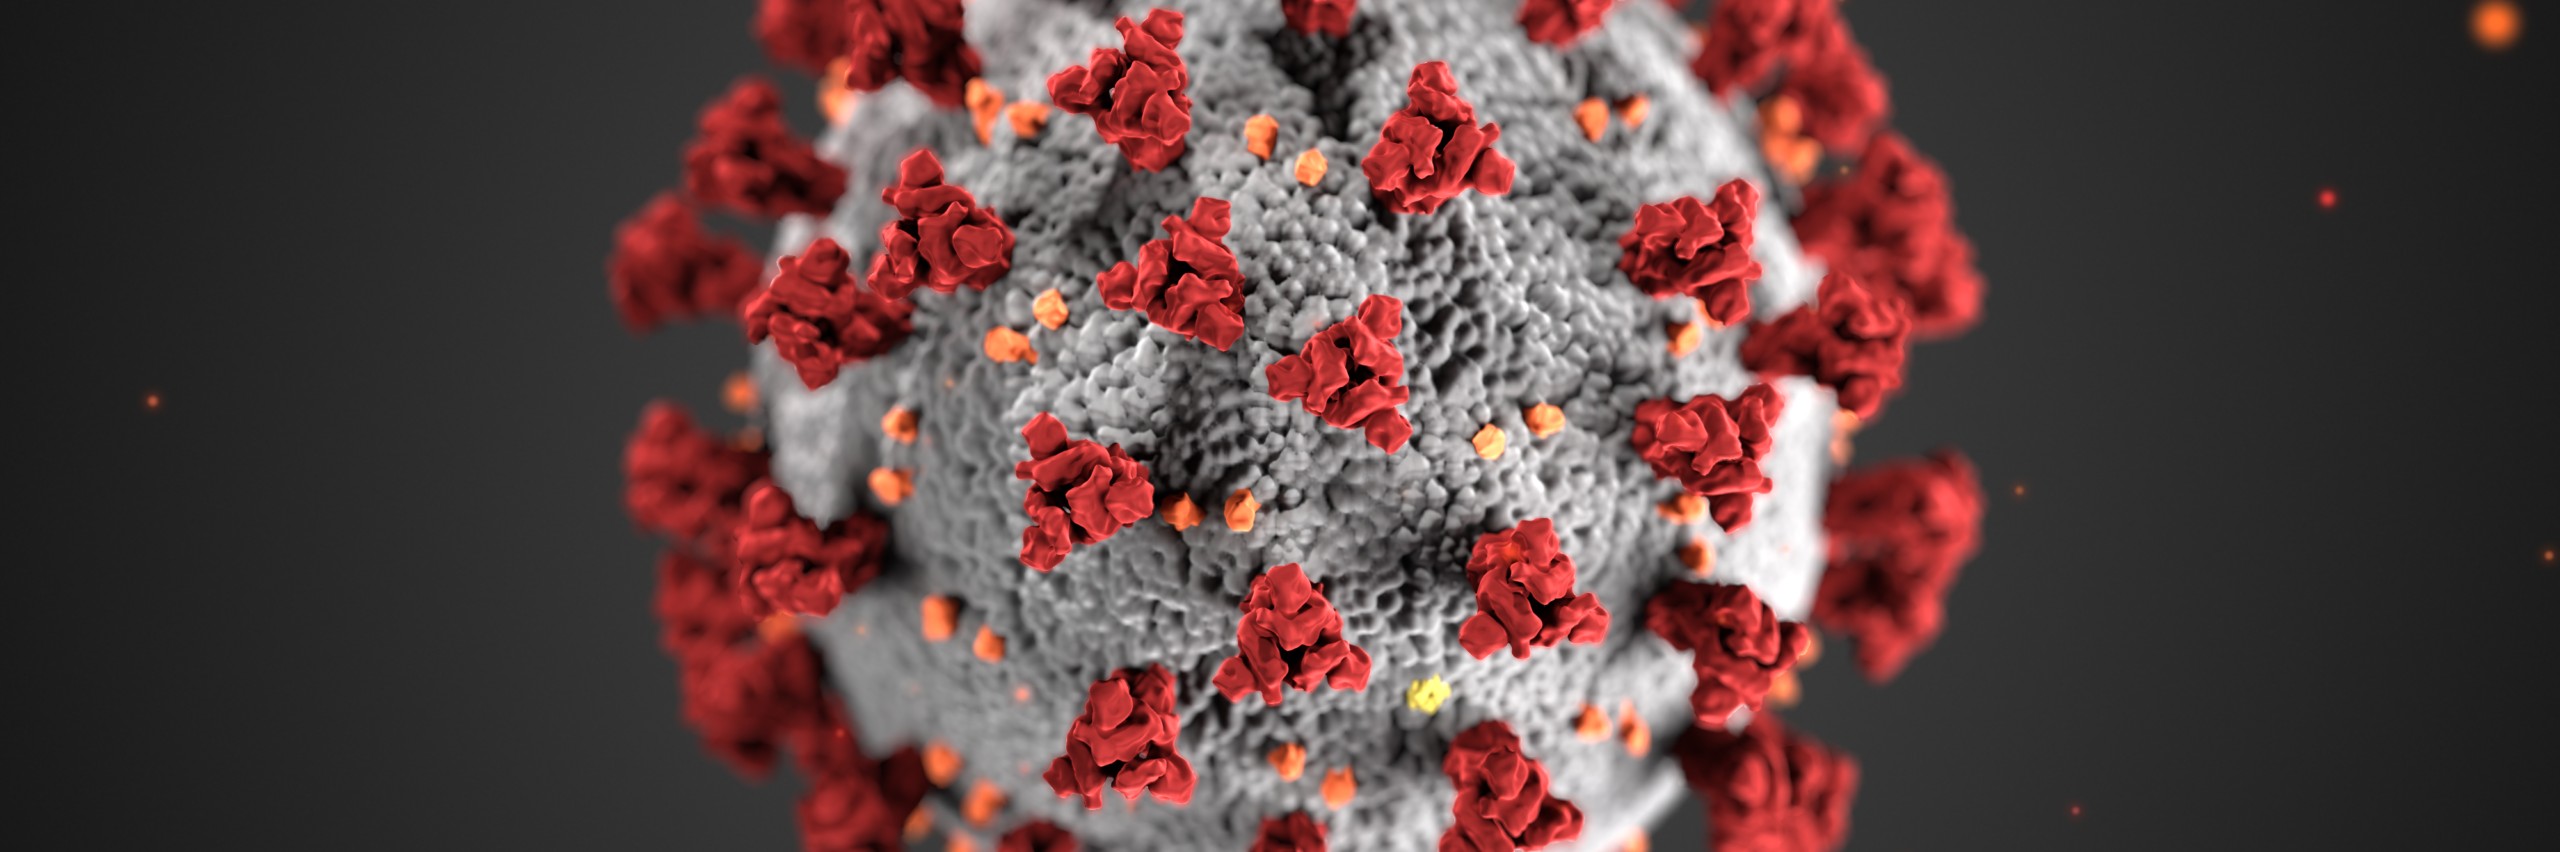 Cientistas criam receptor celular que impede infecção por Sars-CoV-2 -  Revista Galileu | Ciência